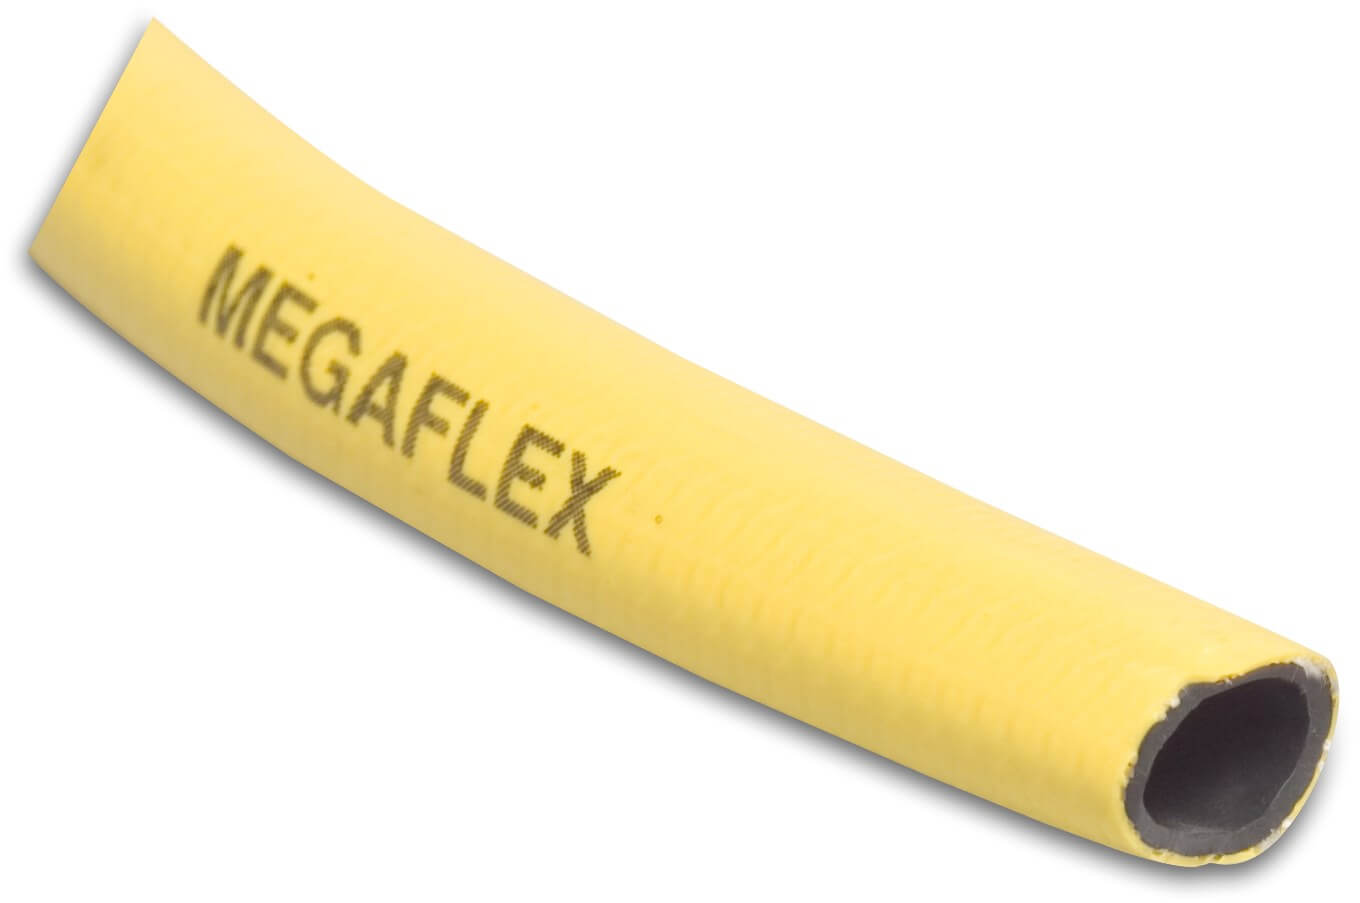 Profec Wąż PVC 12,5 mm 8bar żółty 25m type Megaflex